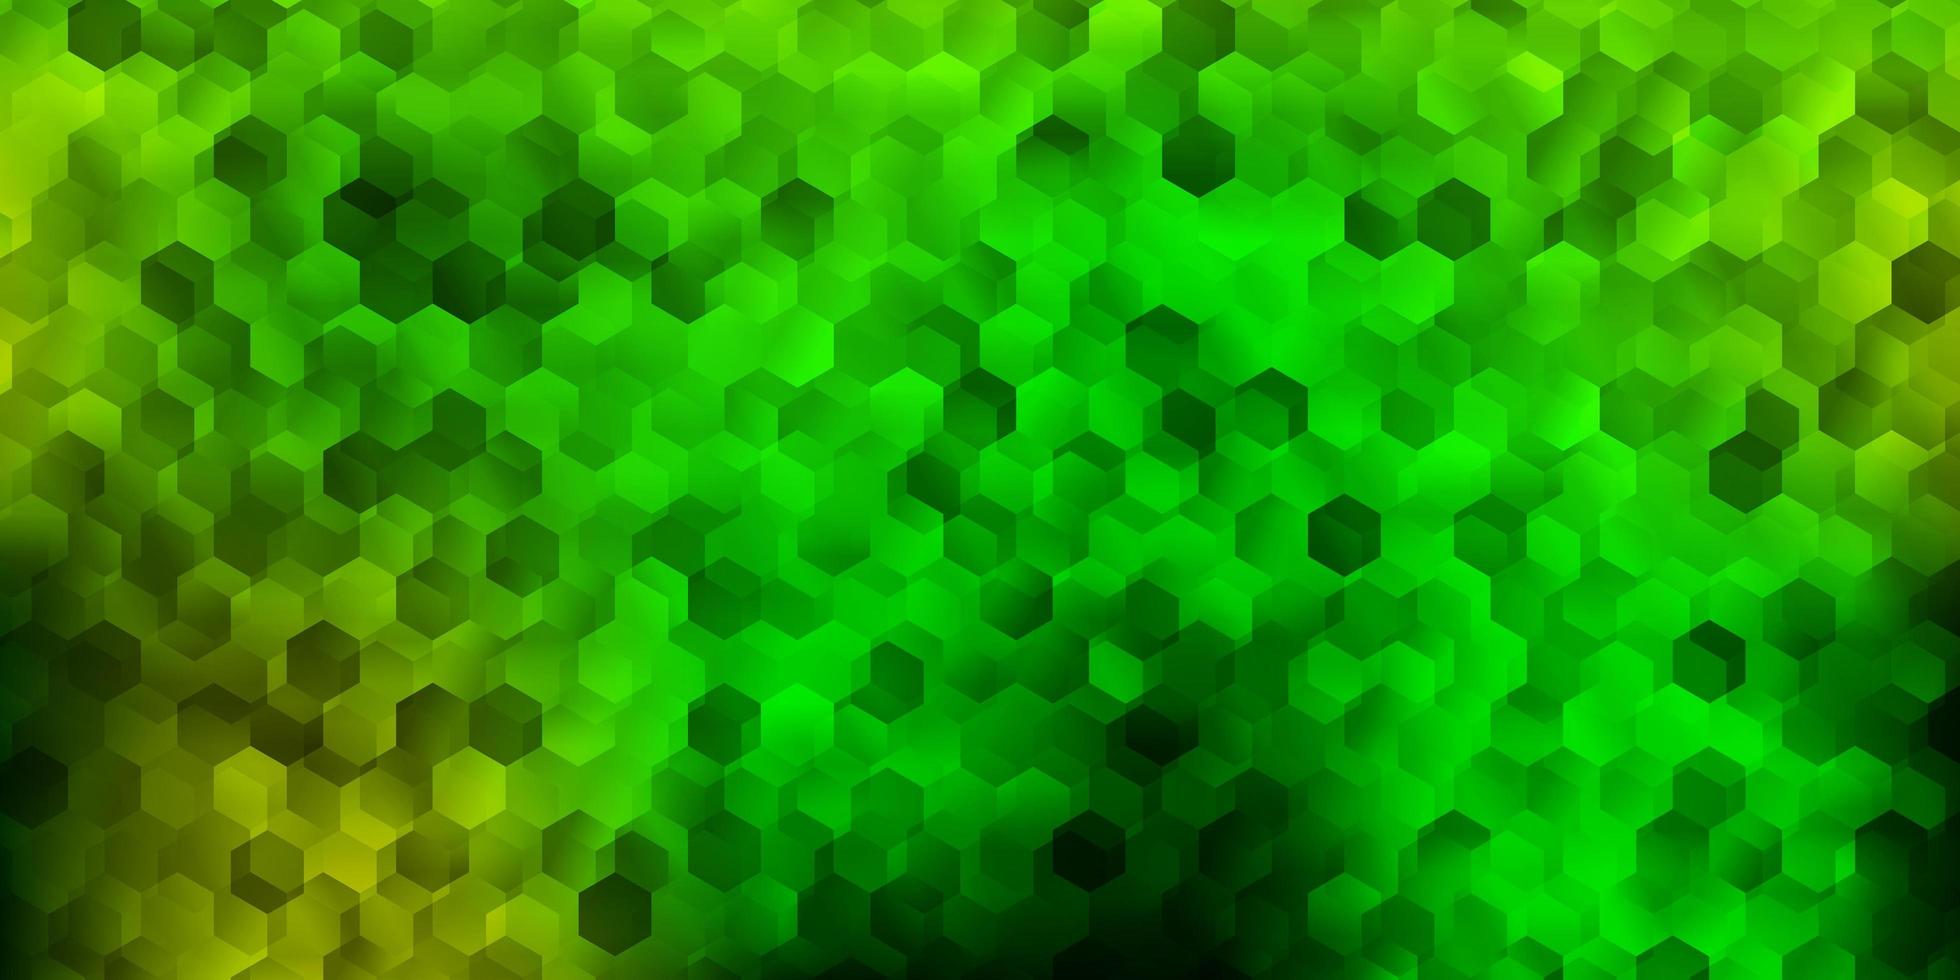 ljusgrön, gul vektorlayout med hexagoner. vektor